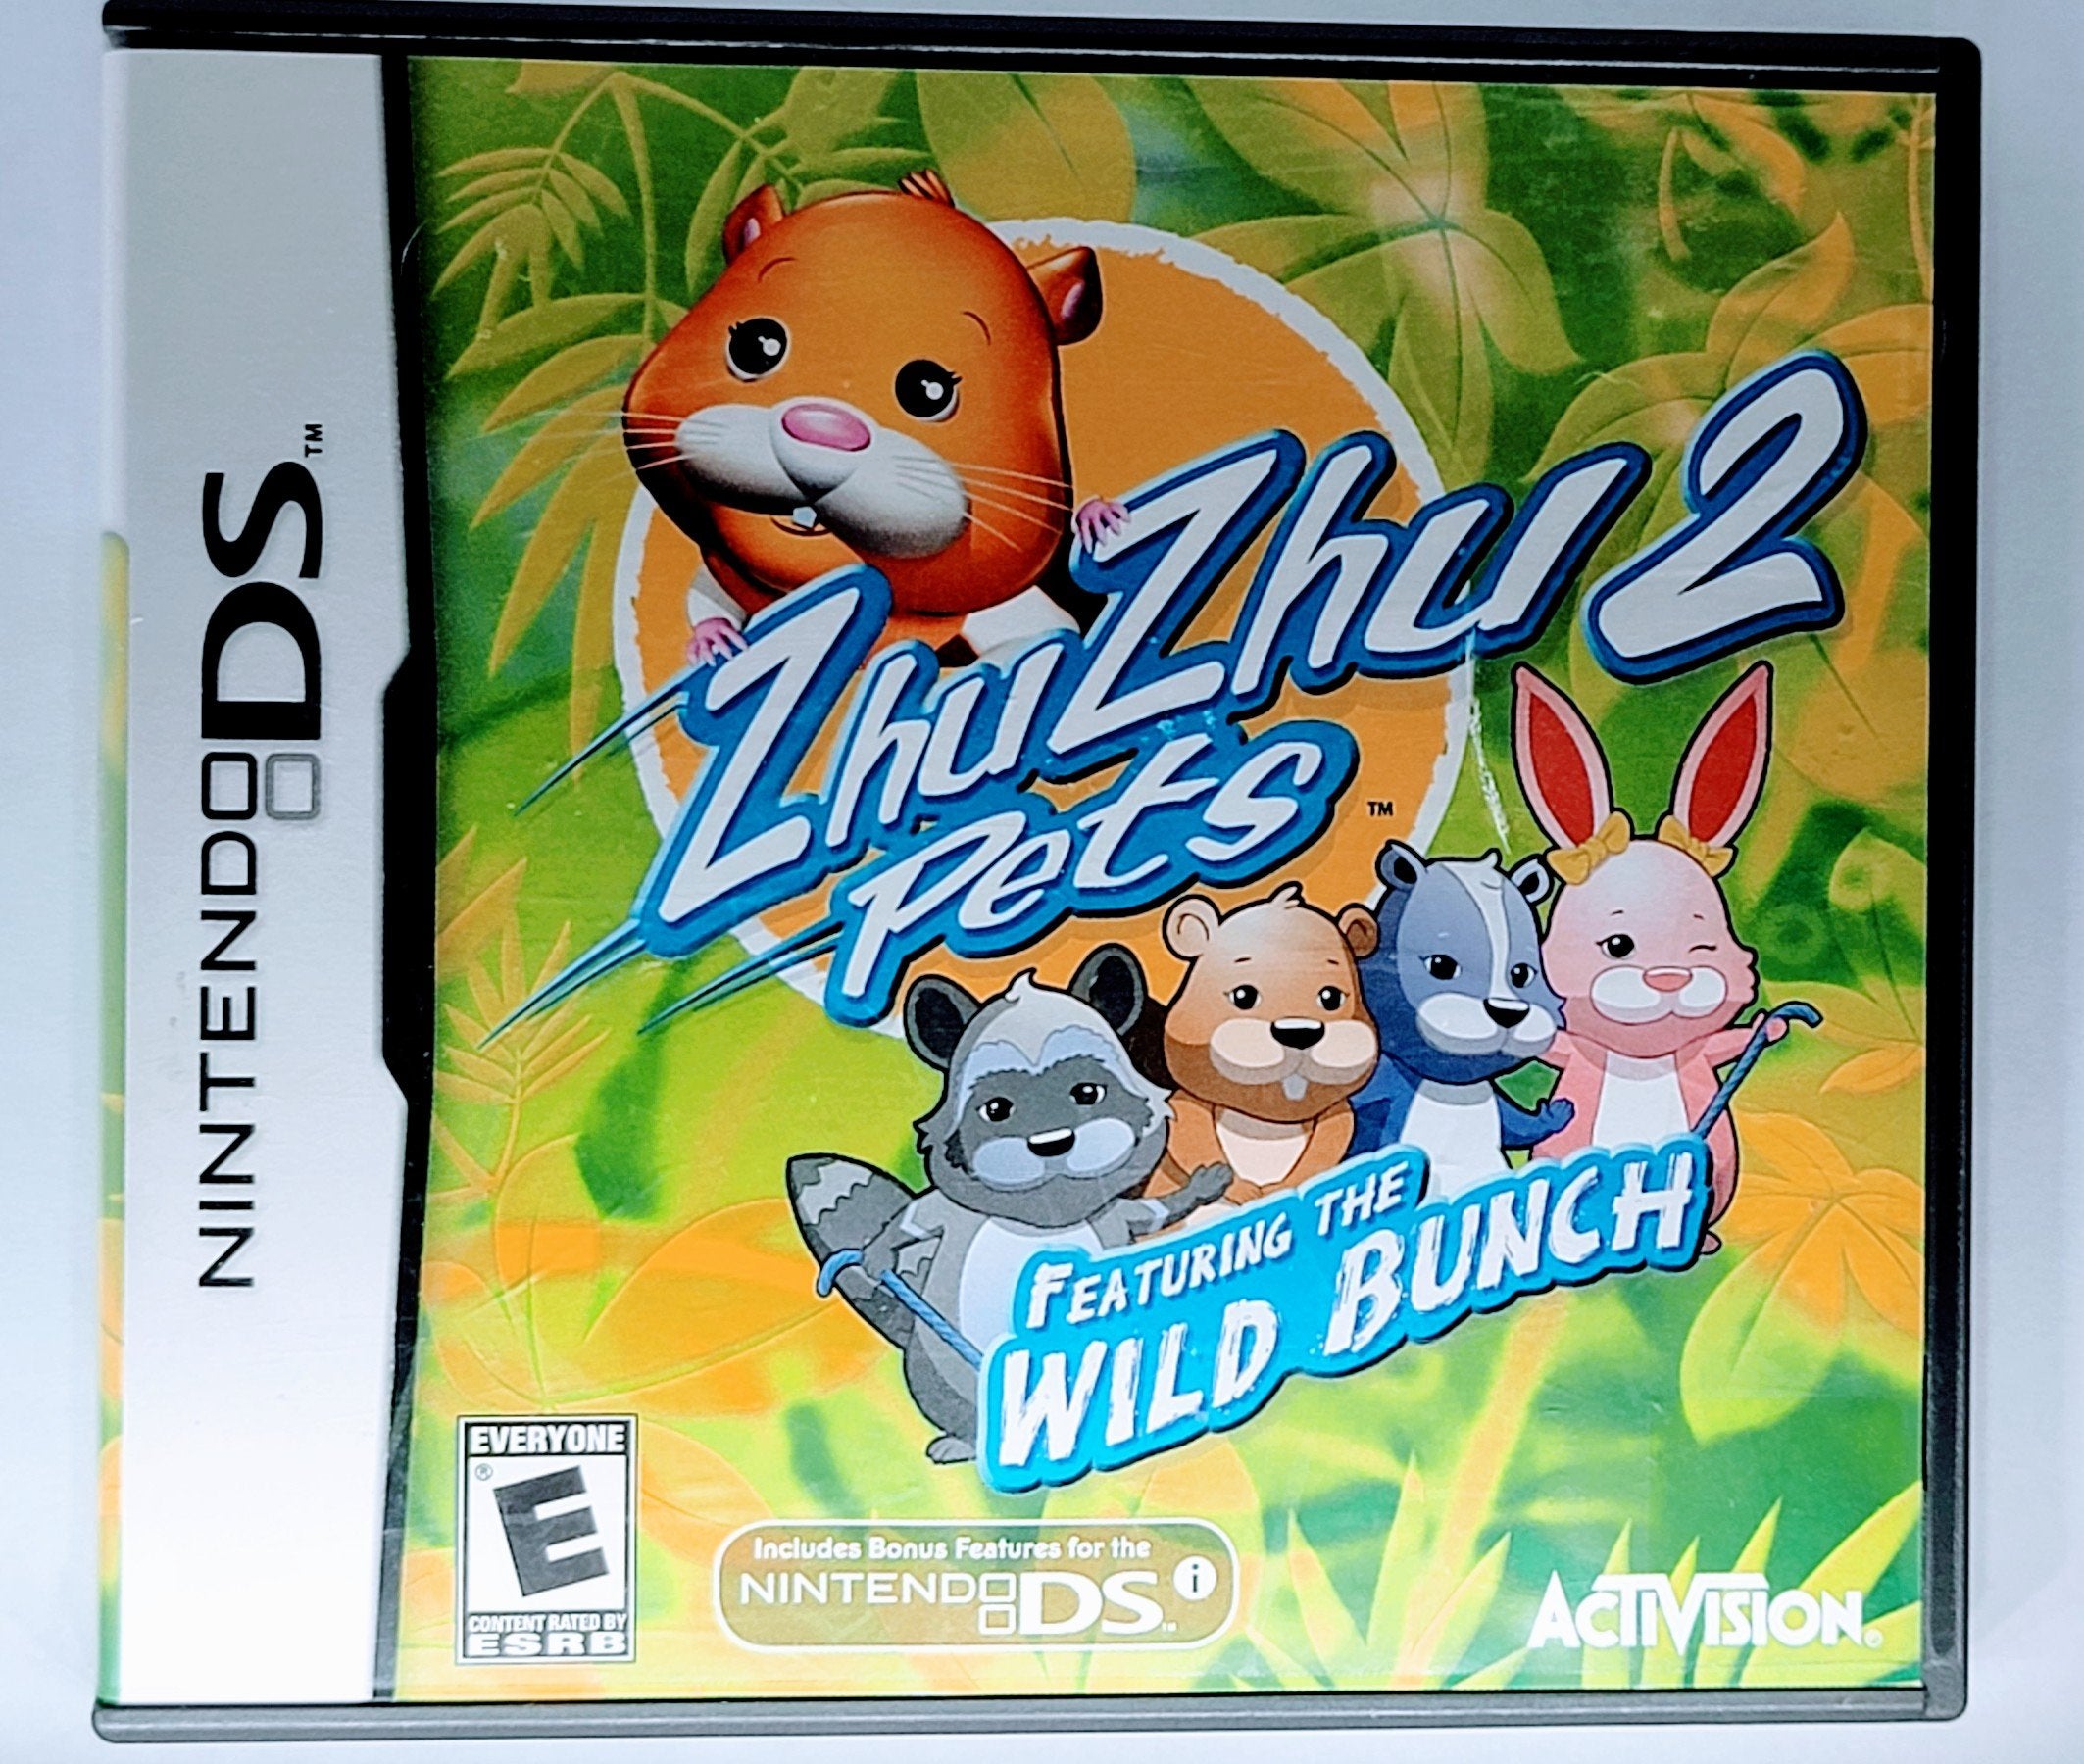 Nintendo DS Zhu Zhu Pets 2 Featuring The Wild Bunch